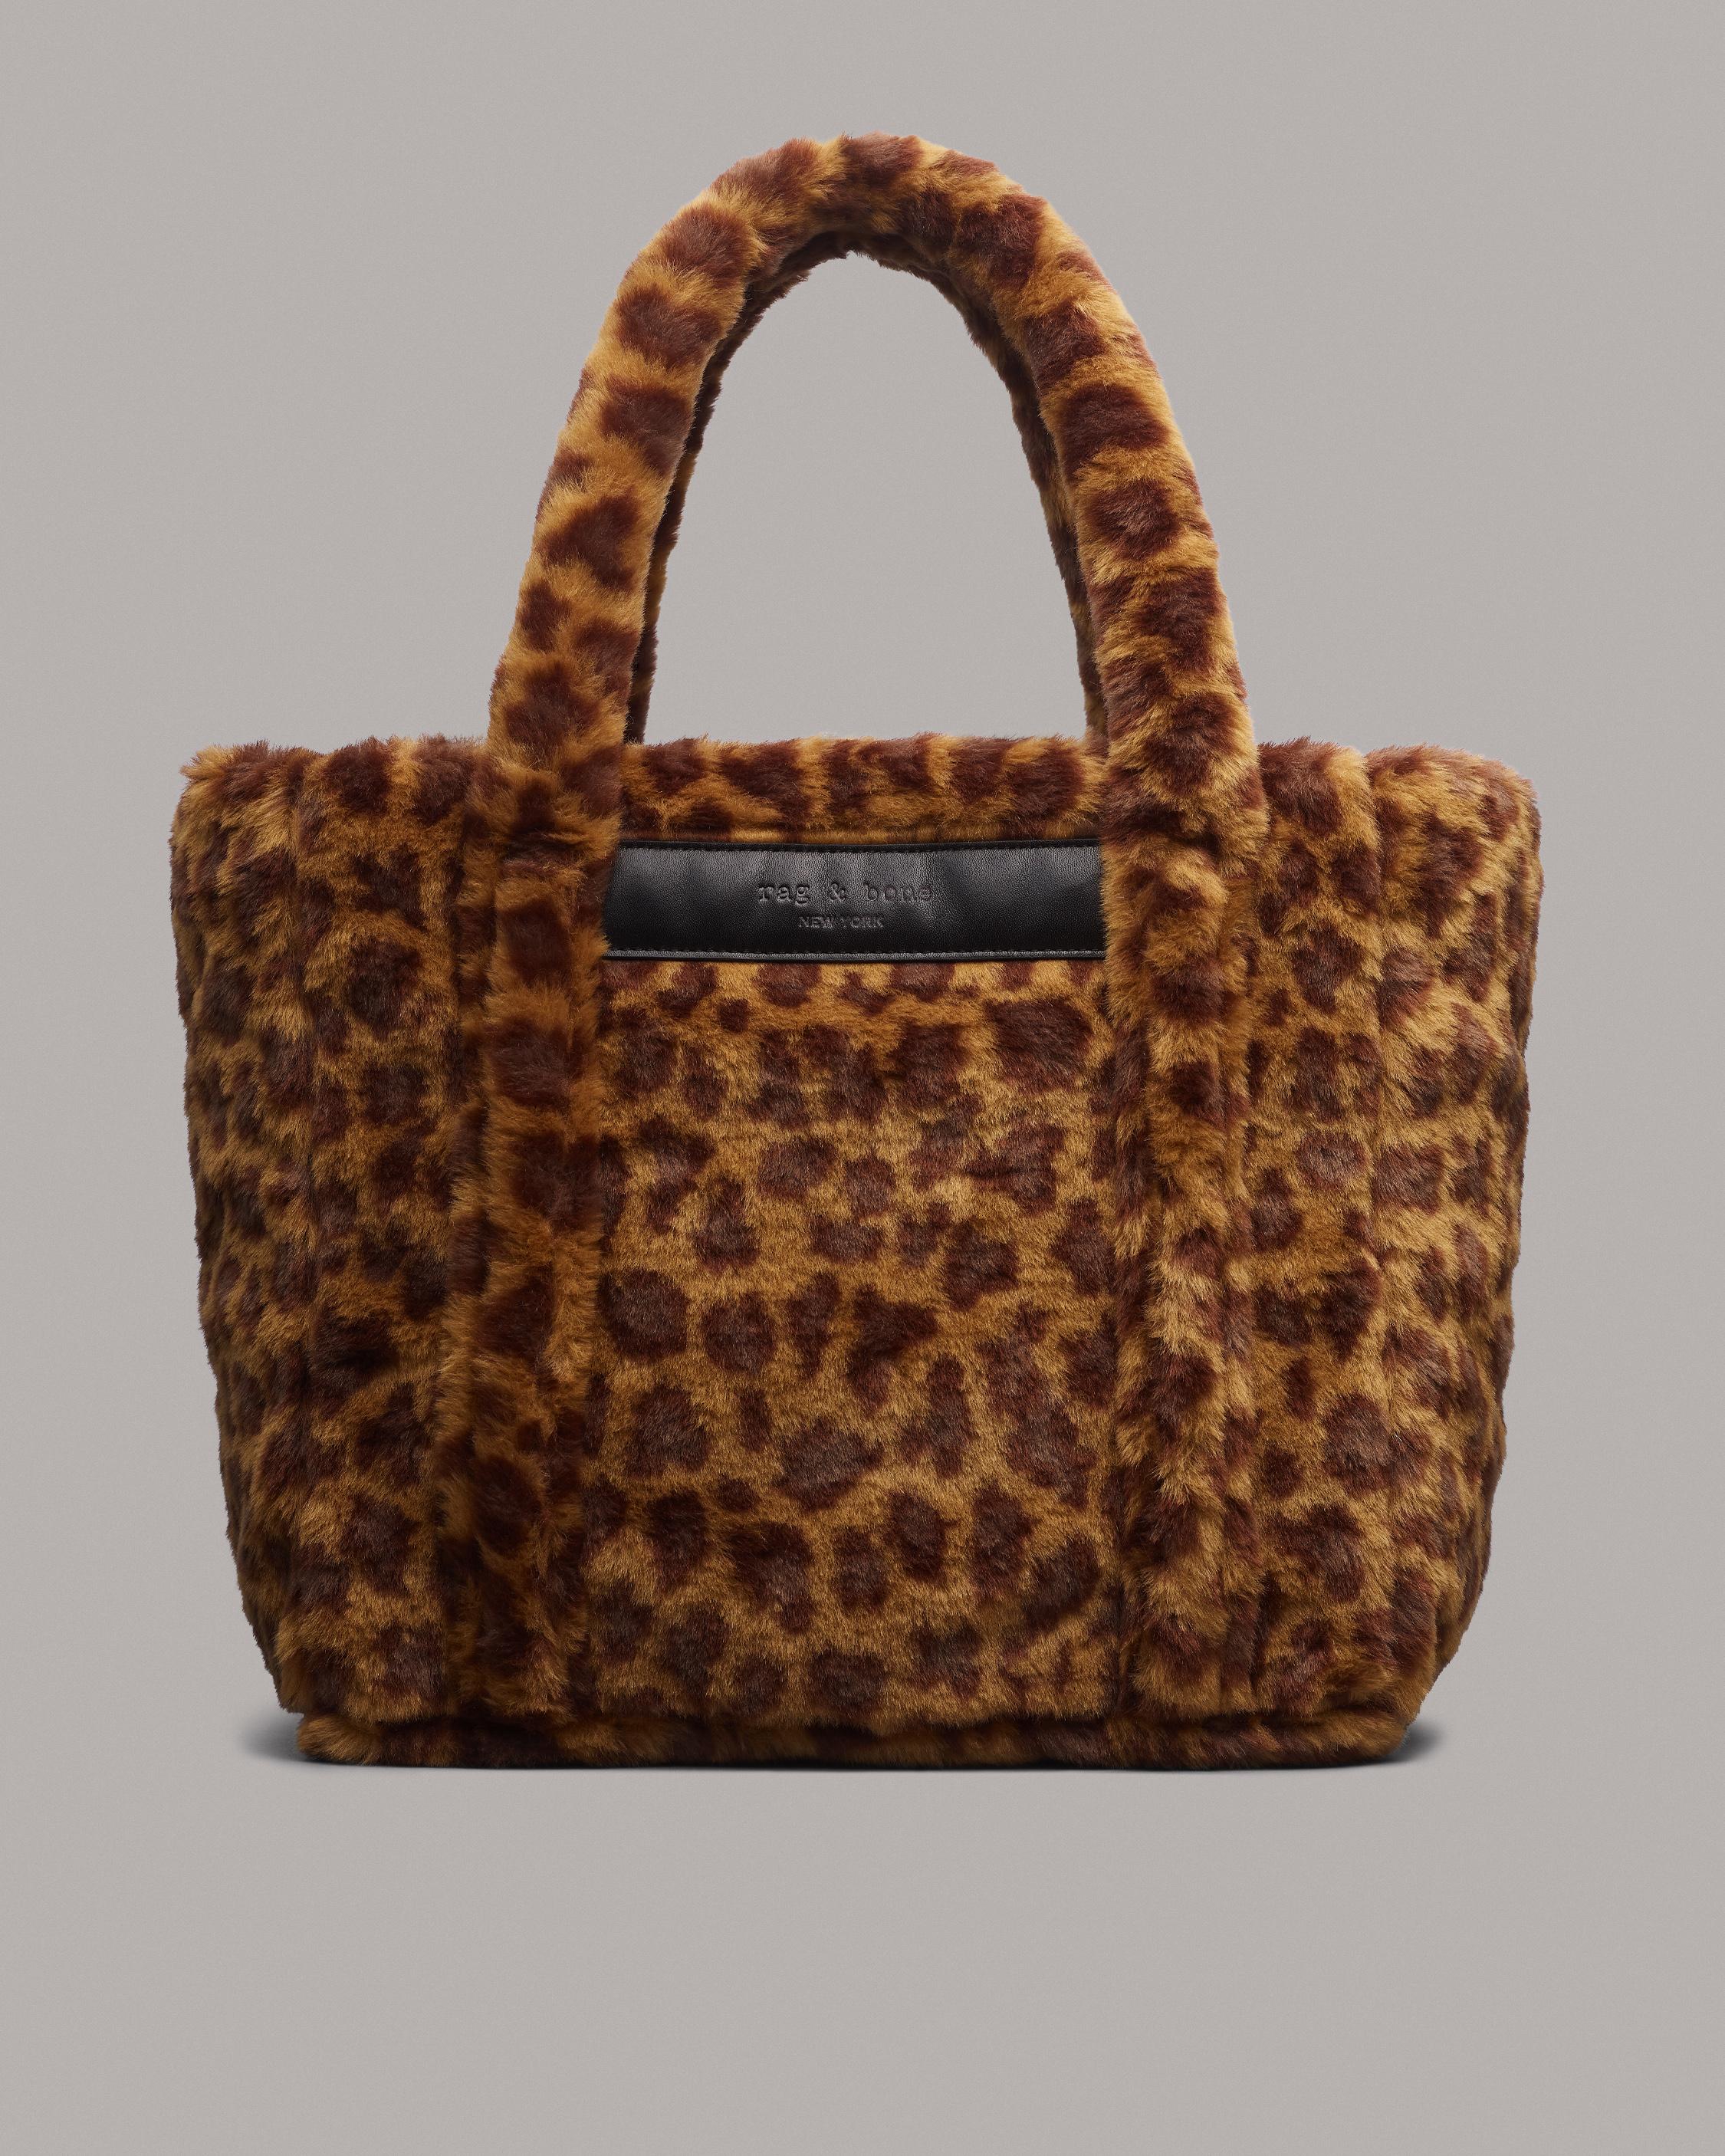 Claudia Canova fur tote bag in leopard print